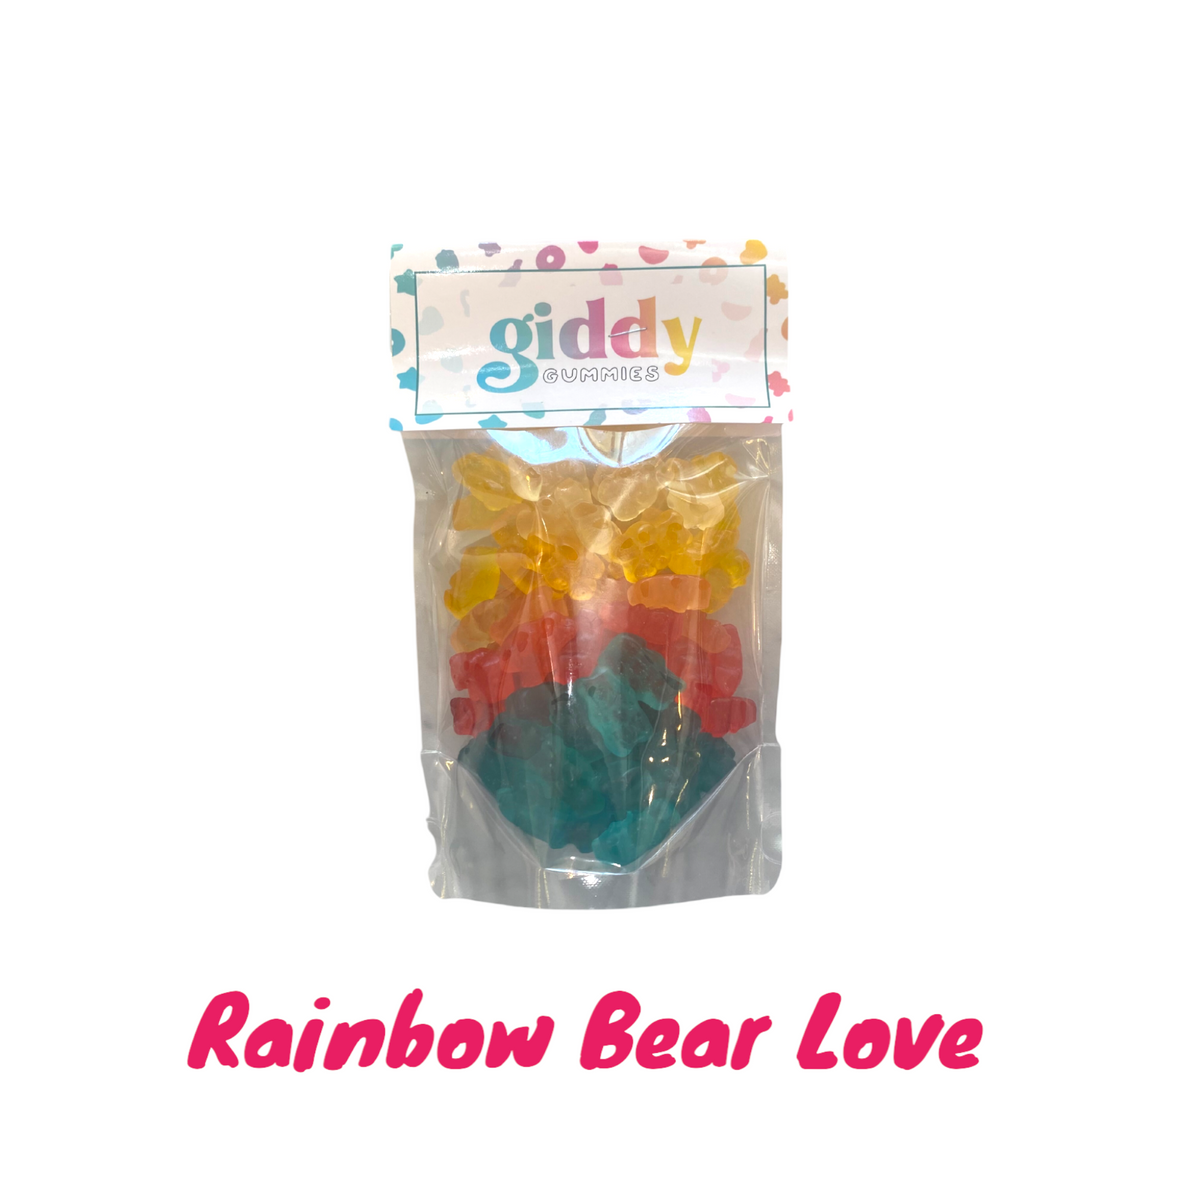 A Rainbow of Gummy Bears